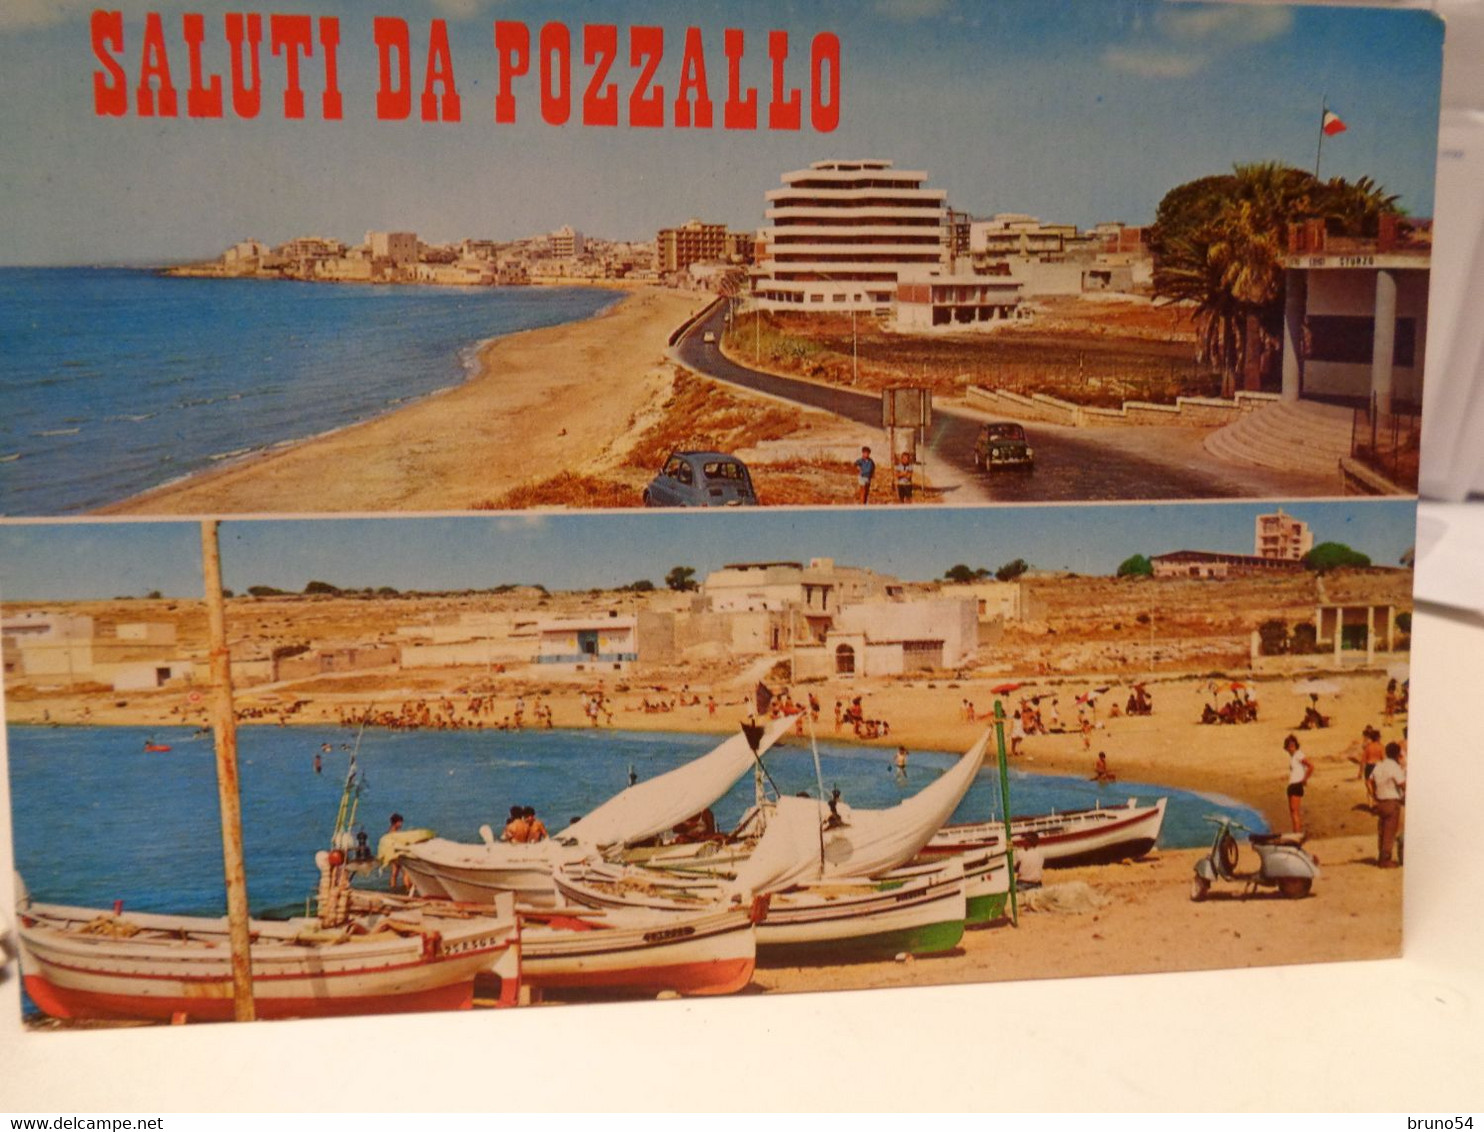 Cartolina Saluti Da Pozzallo Prov Ragusa Spiaggia, Barche, Vespa Piaggio 1973 - Ragusa